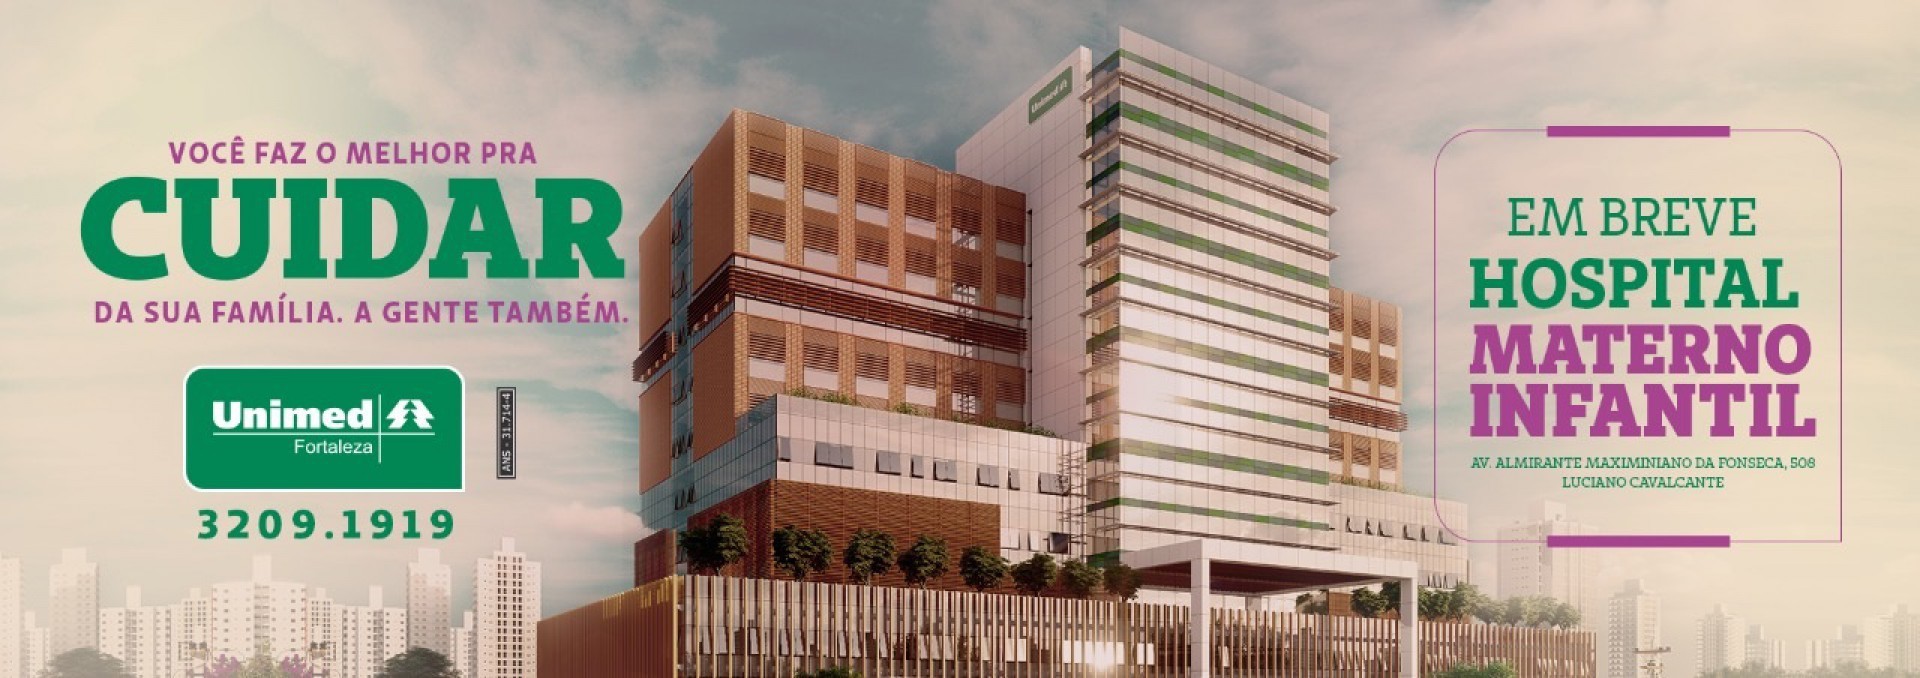 O Hospital Materno Infantil da Unimed Fortaleza está previsto para ser inaugurado em janeiro de 2022 (Foto: Divulgação )